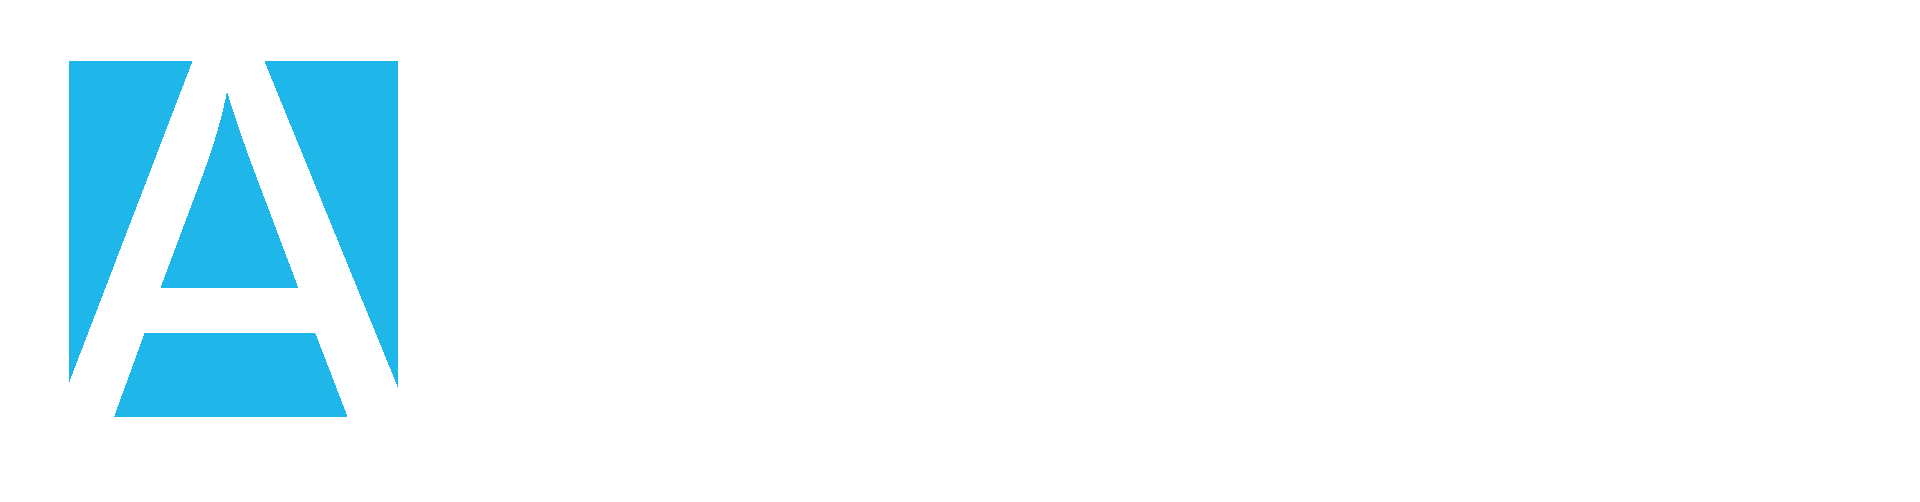 AdhocWeb